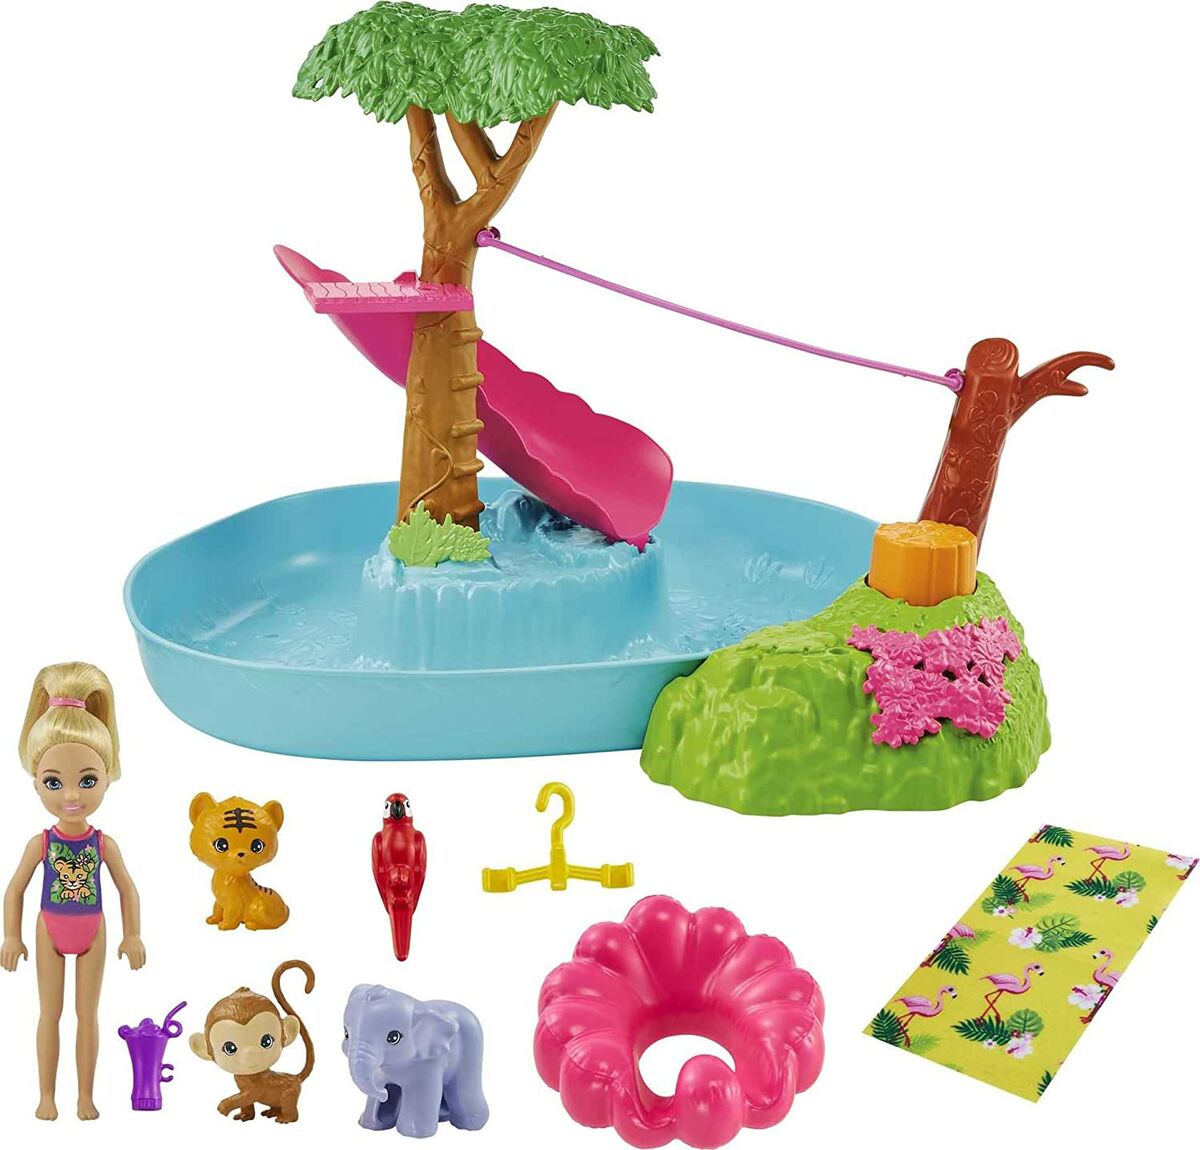 Barbie Chelsea The Lost Birthday, Splashtastic Pool Playset